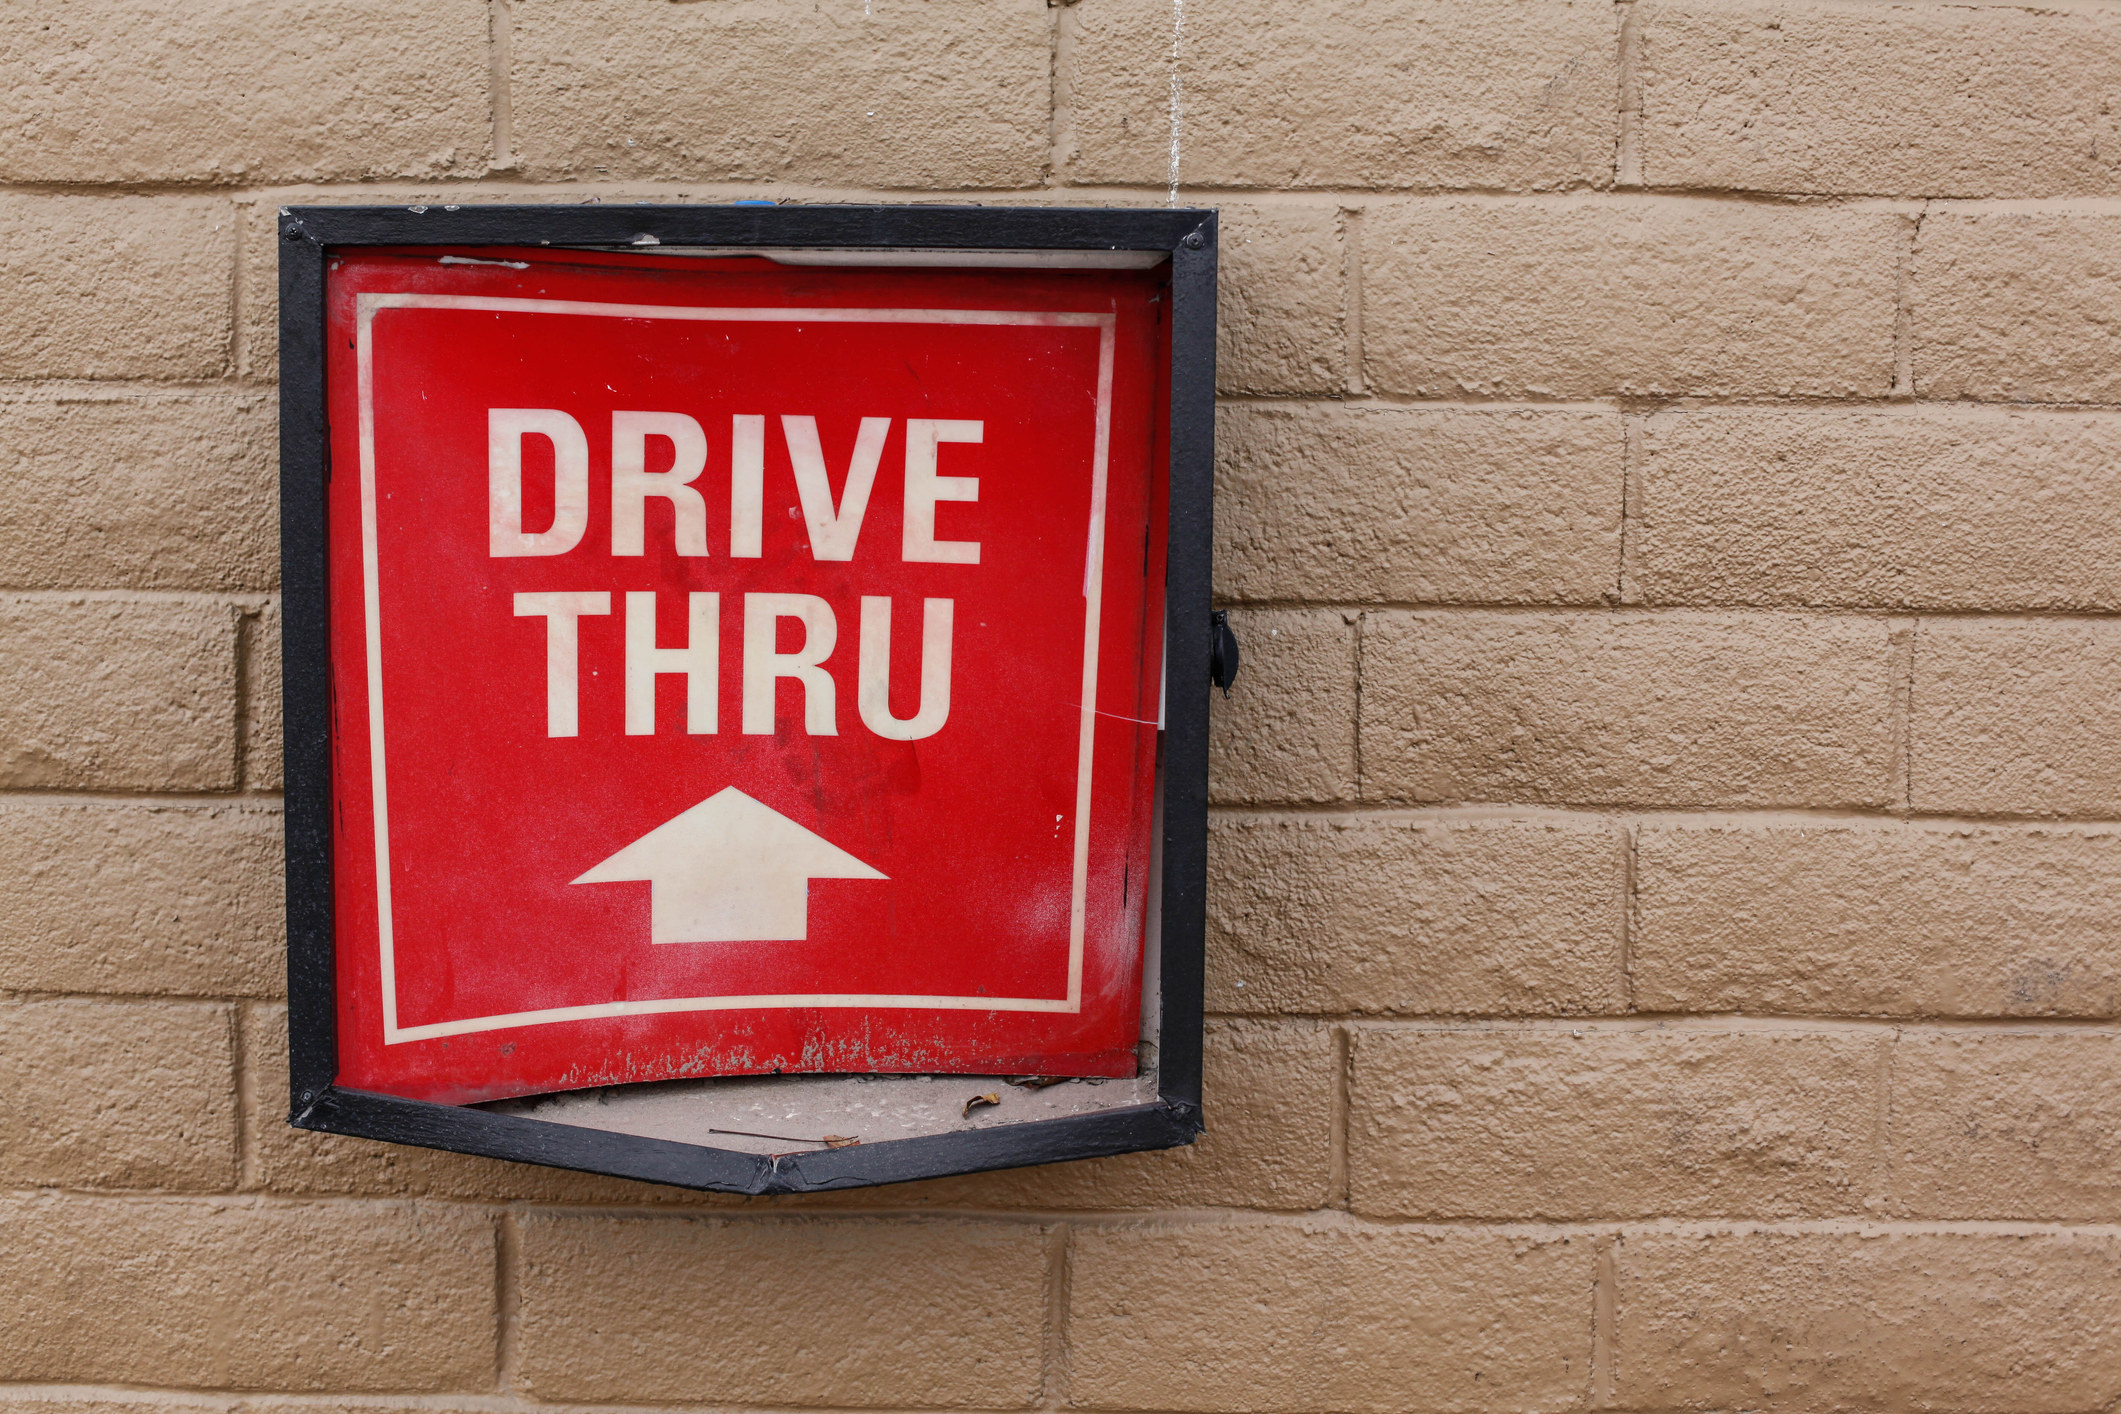 A drive-thru sign